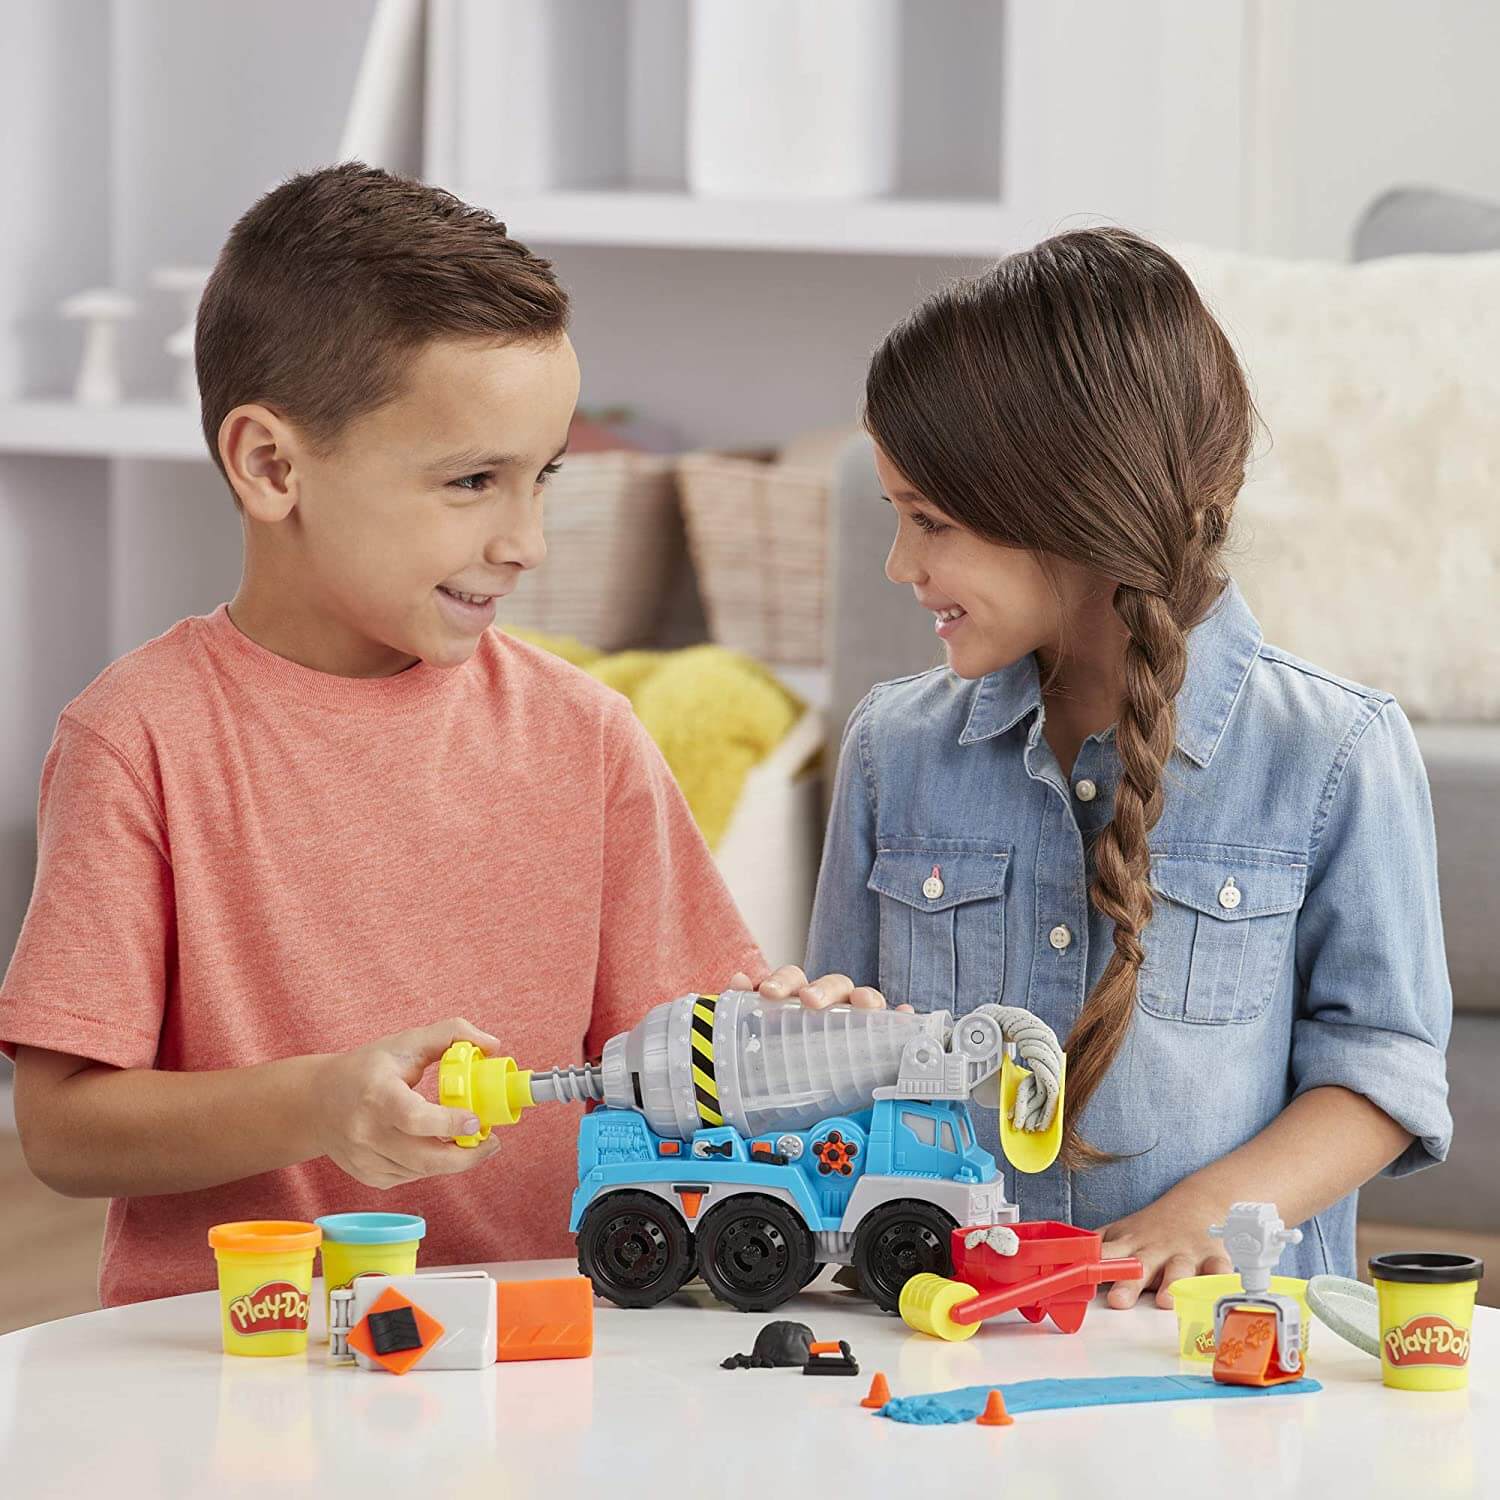 Play-Doh Wheels Cement Truck Dough Set